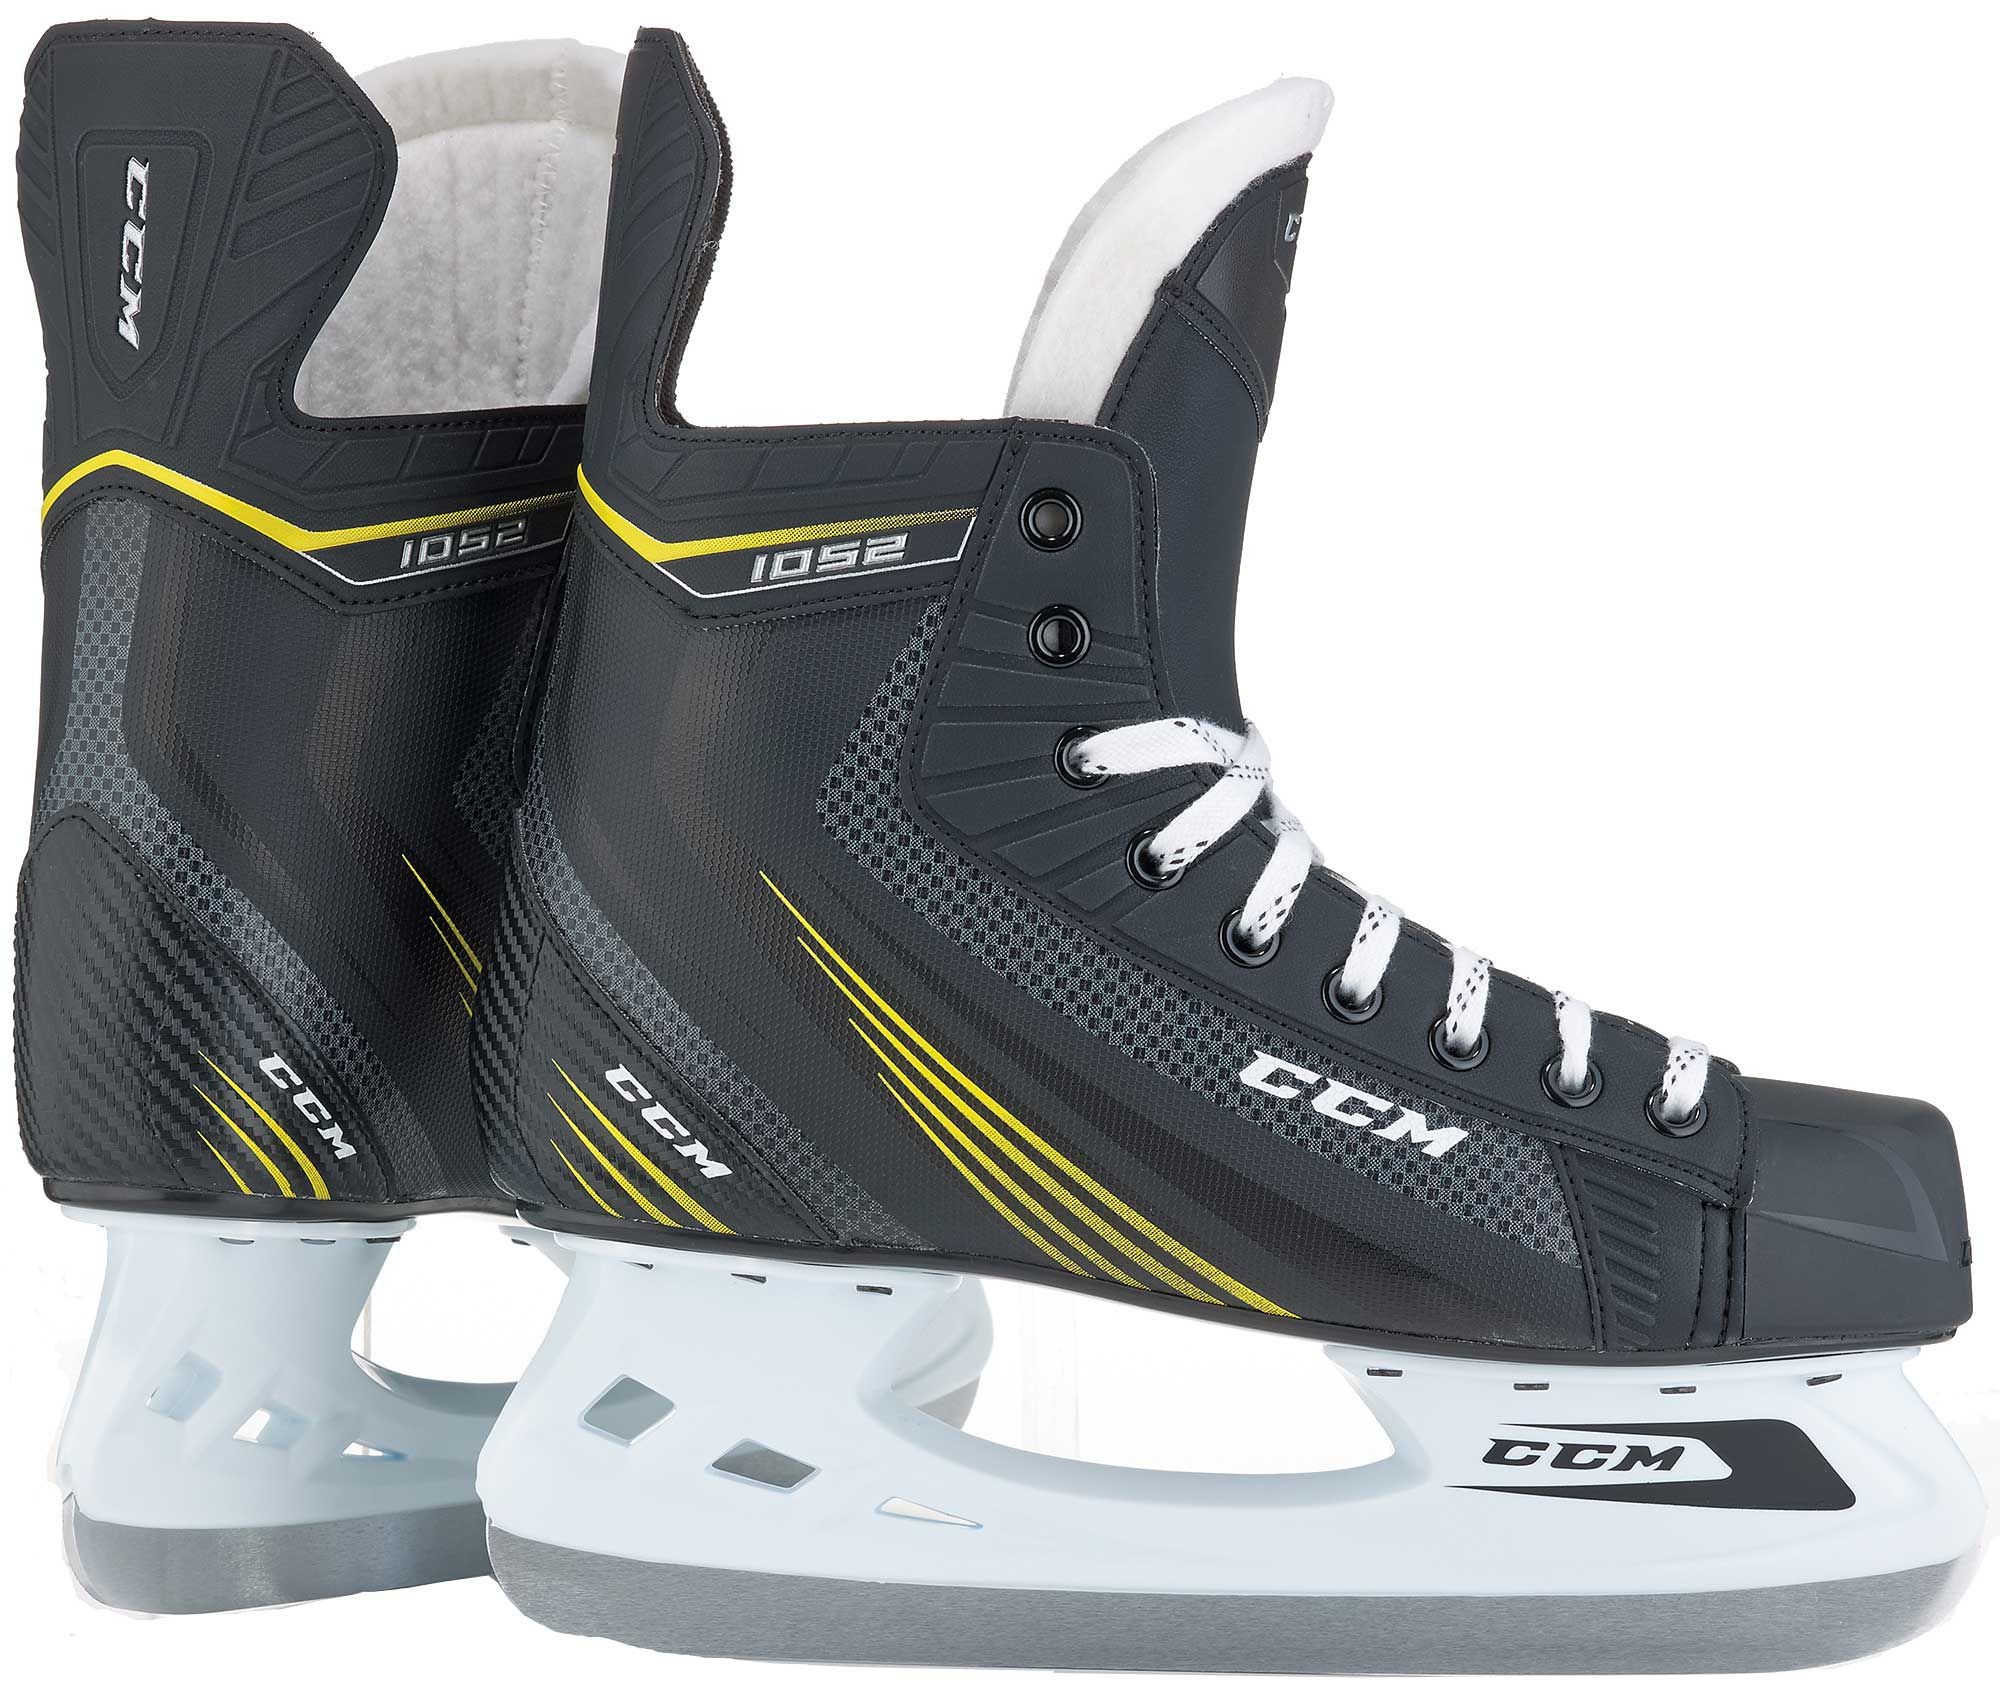 CCM Tacks 1052 Senior Ice Hockey Skates